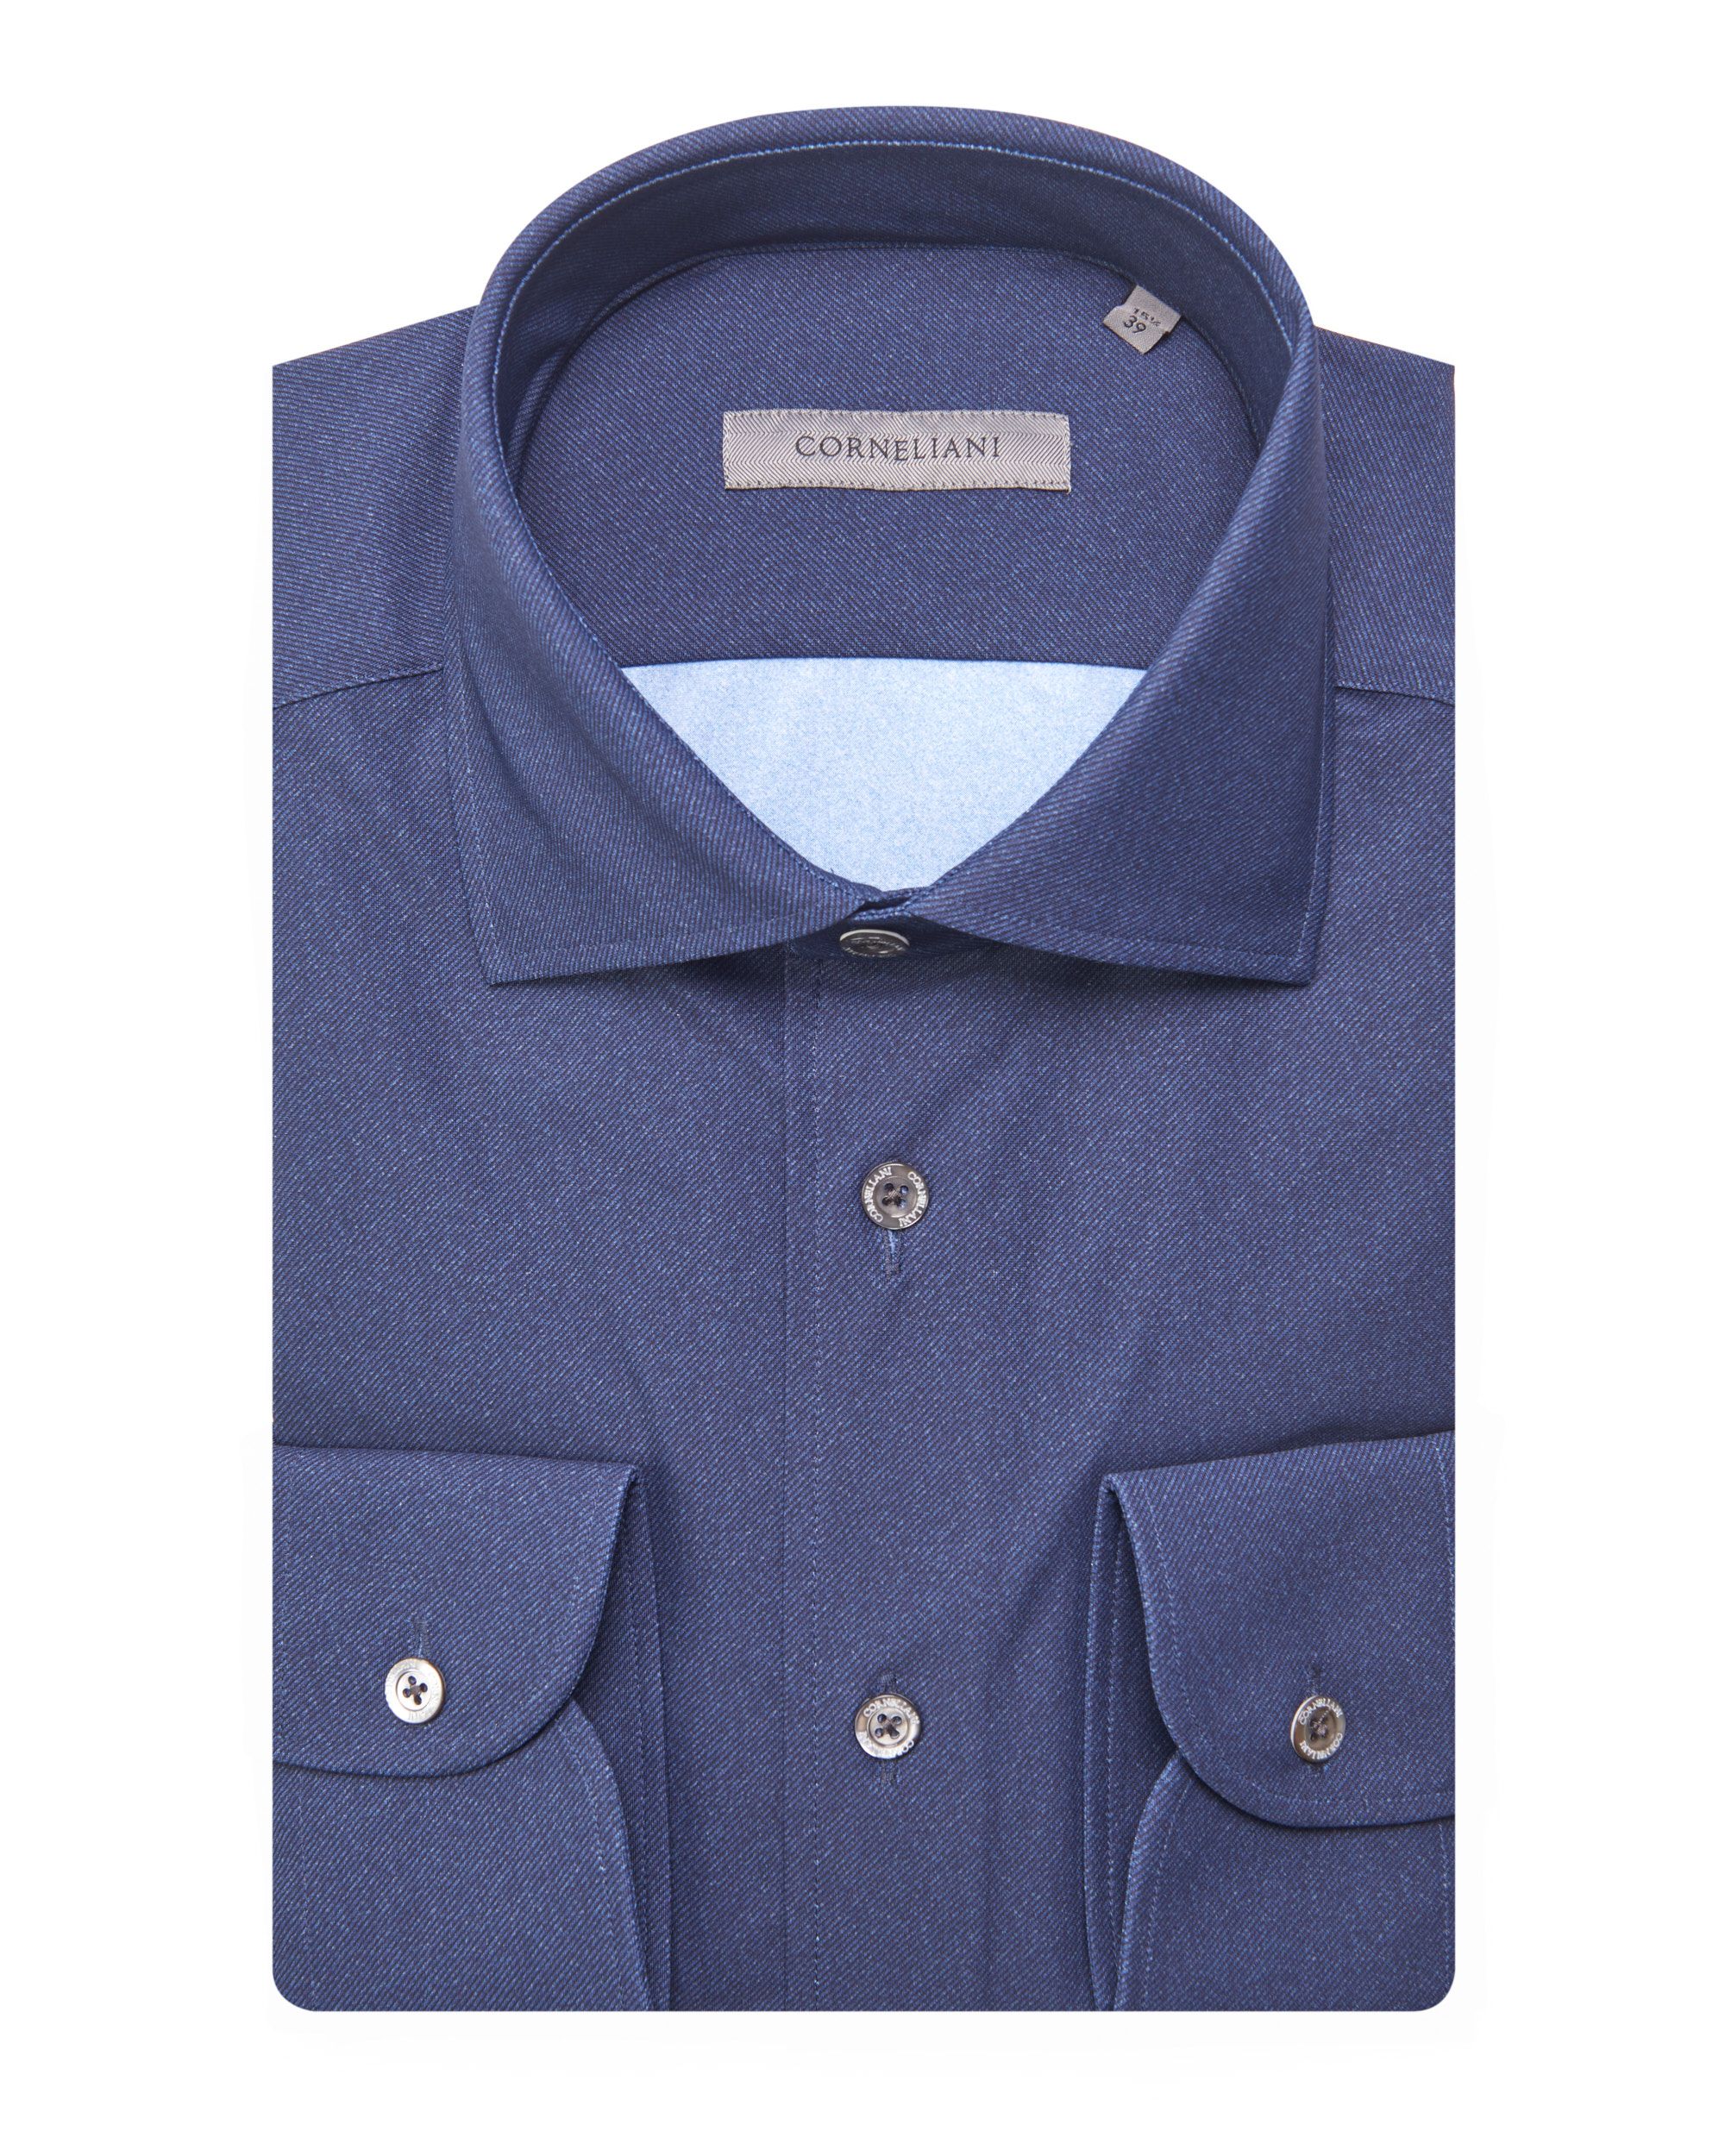 Corneliani Overhemd LM Donker blauw 078620-001-39